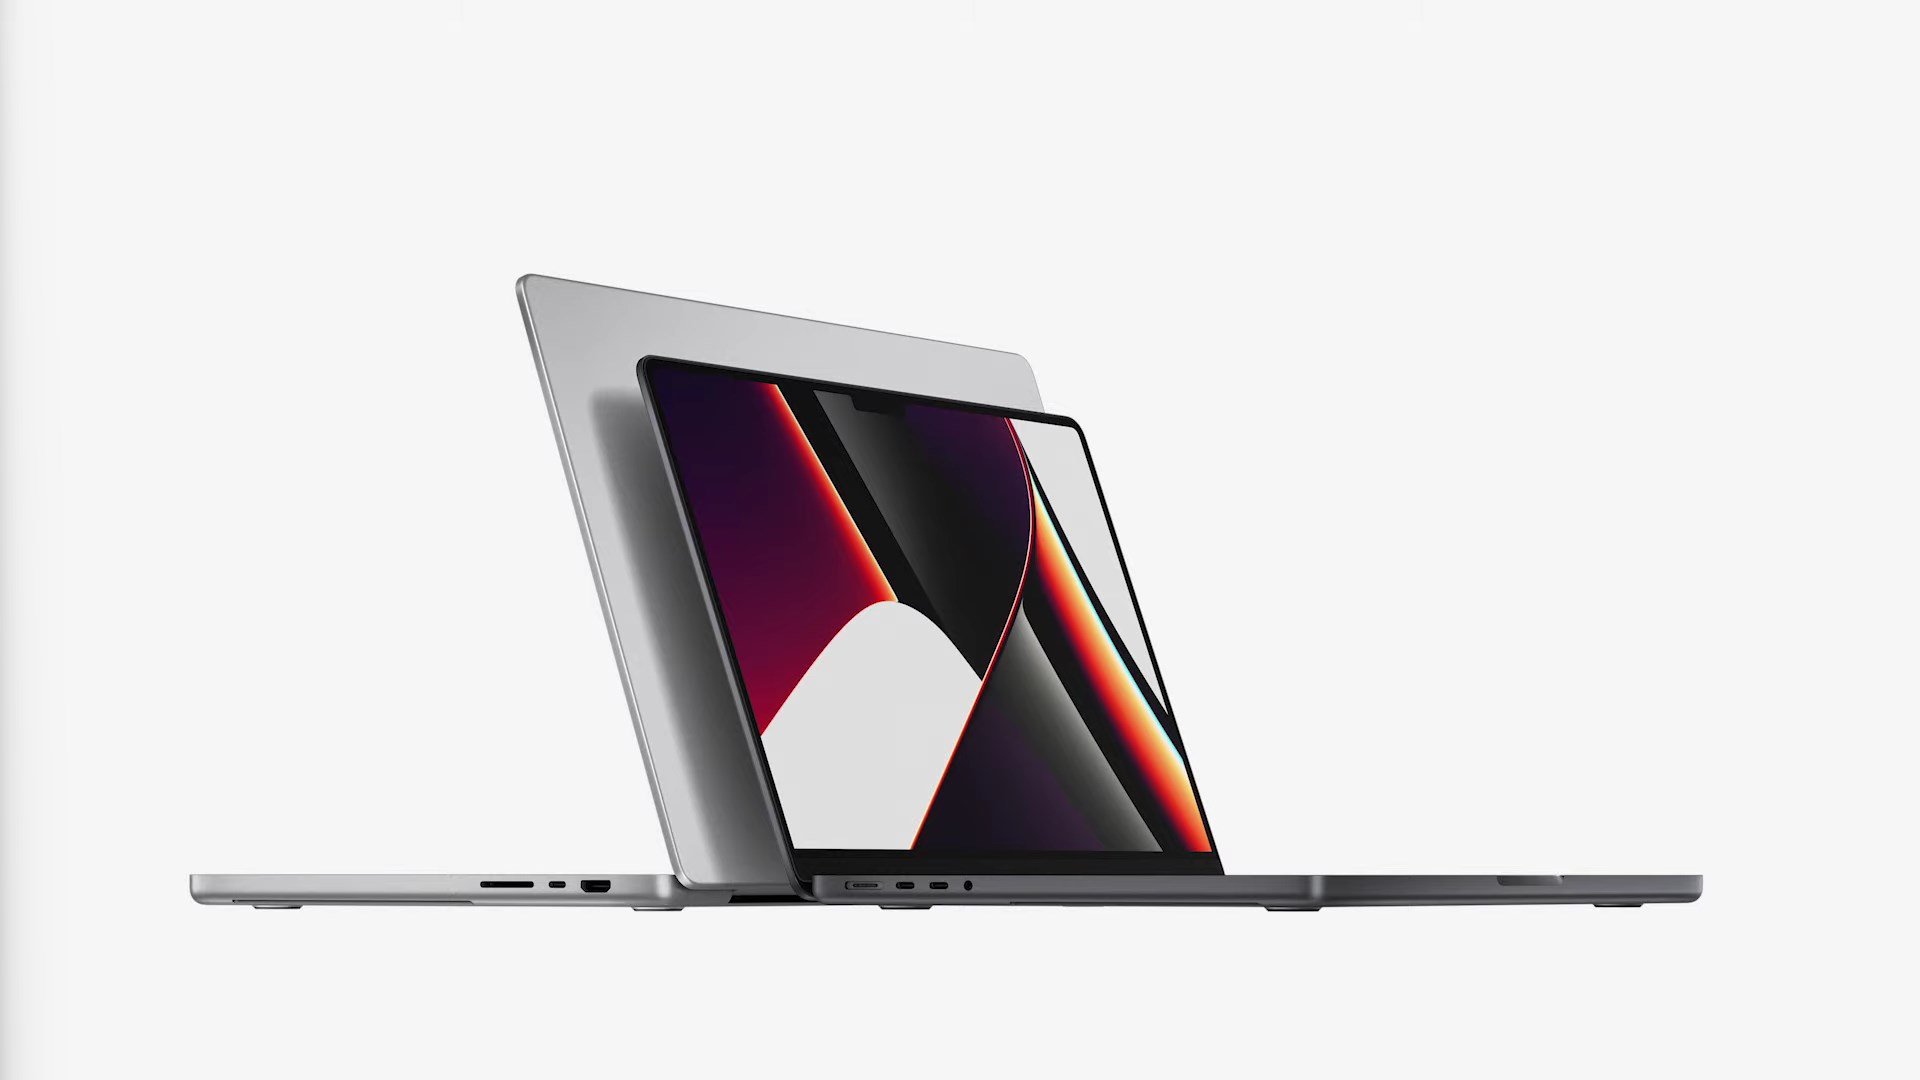 Νέα μέλη 14 και 16 ιντσών στην οικογένεια MacBook Pro, με κορυφαίες επιδόσεις και...notch